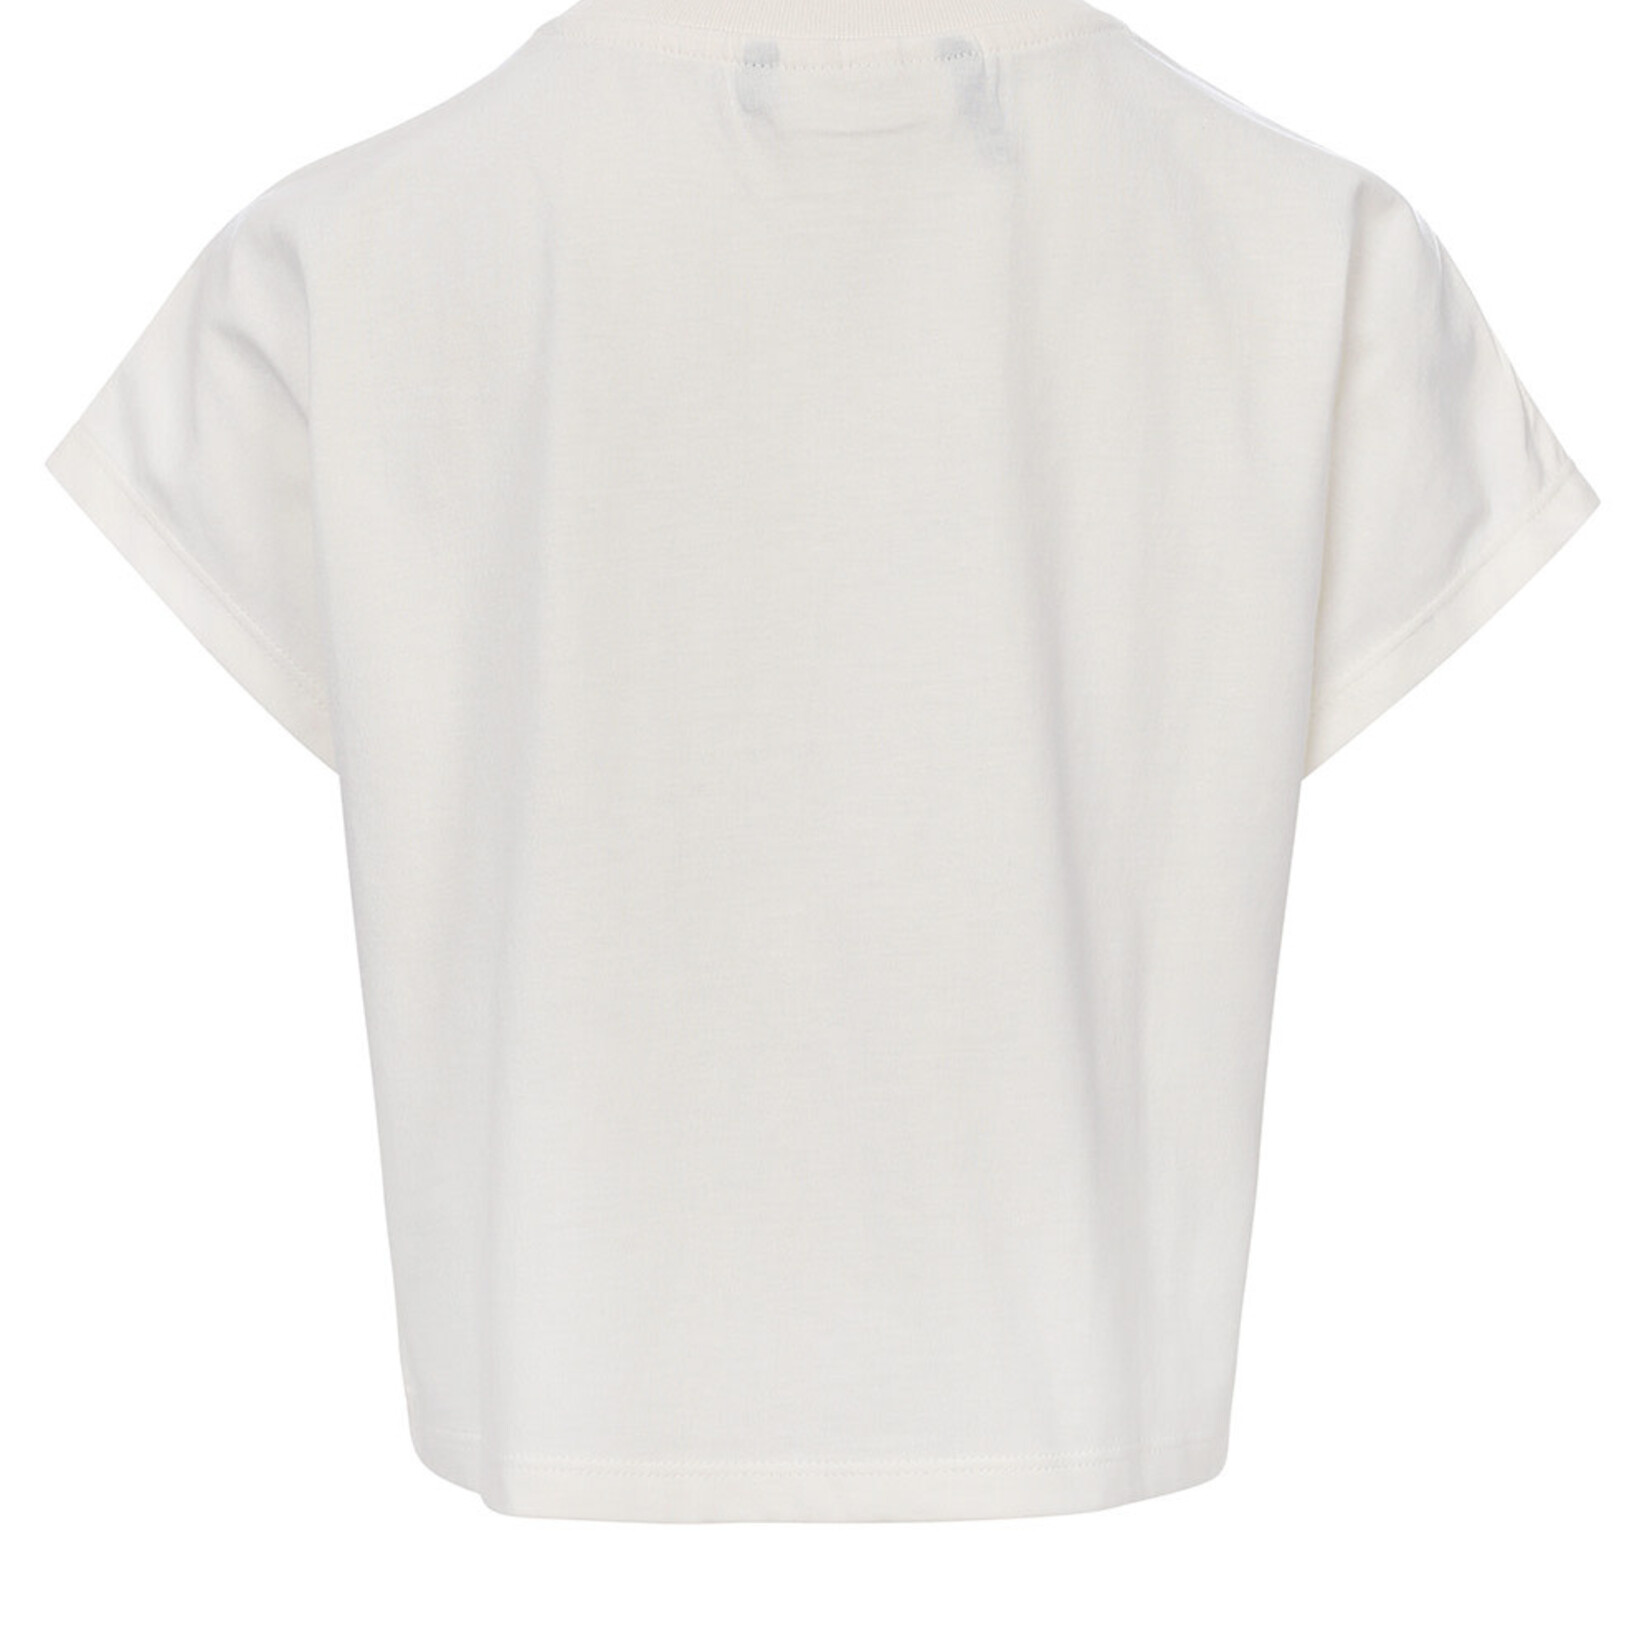 Looxs 10sixteen 10Sixteen T-shirt off white